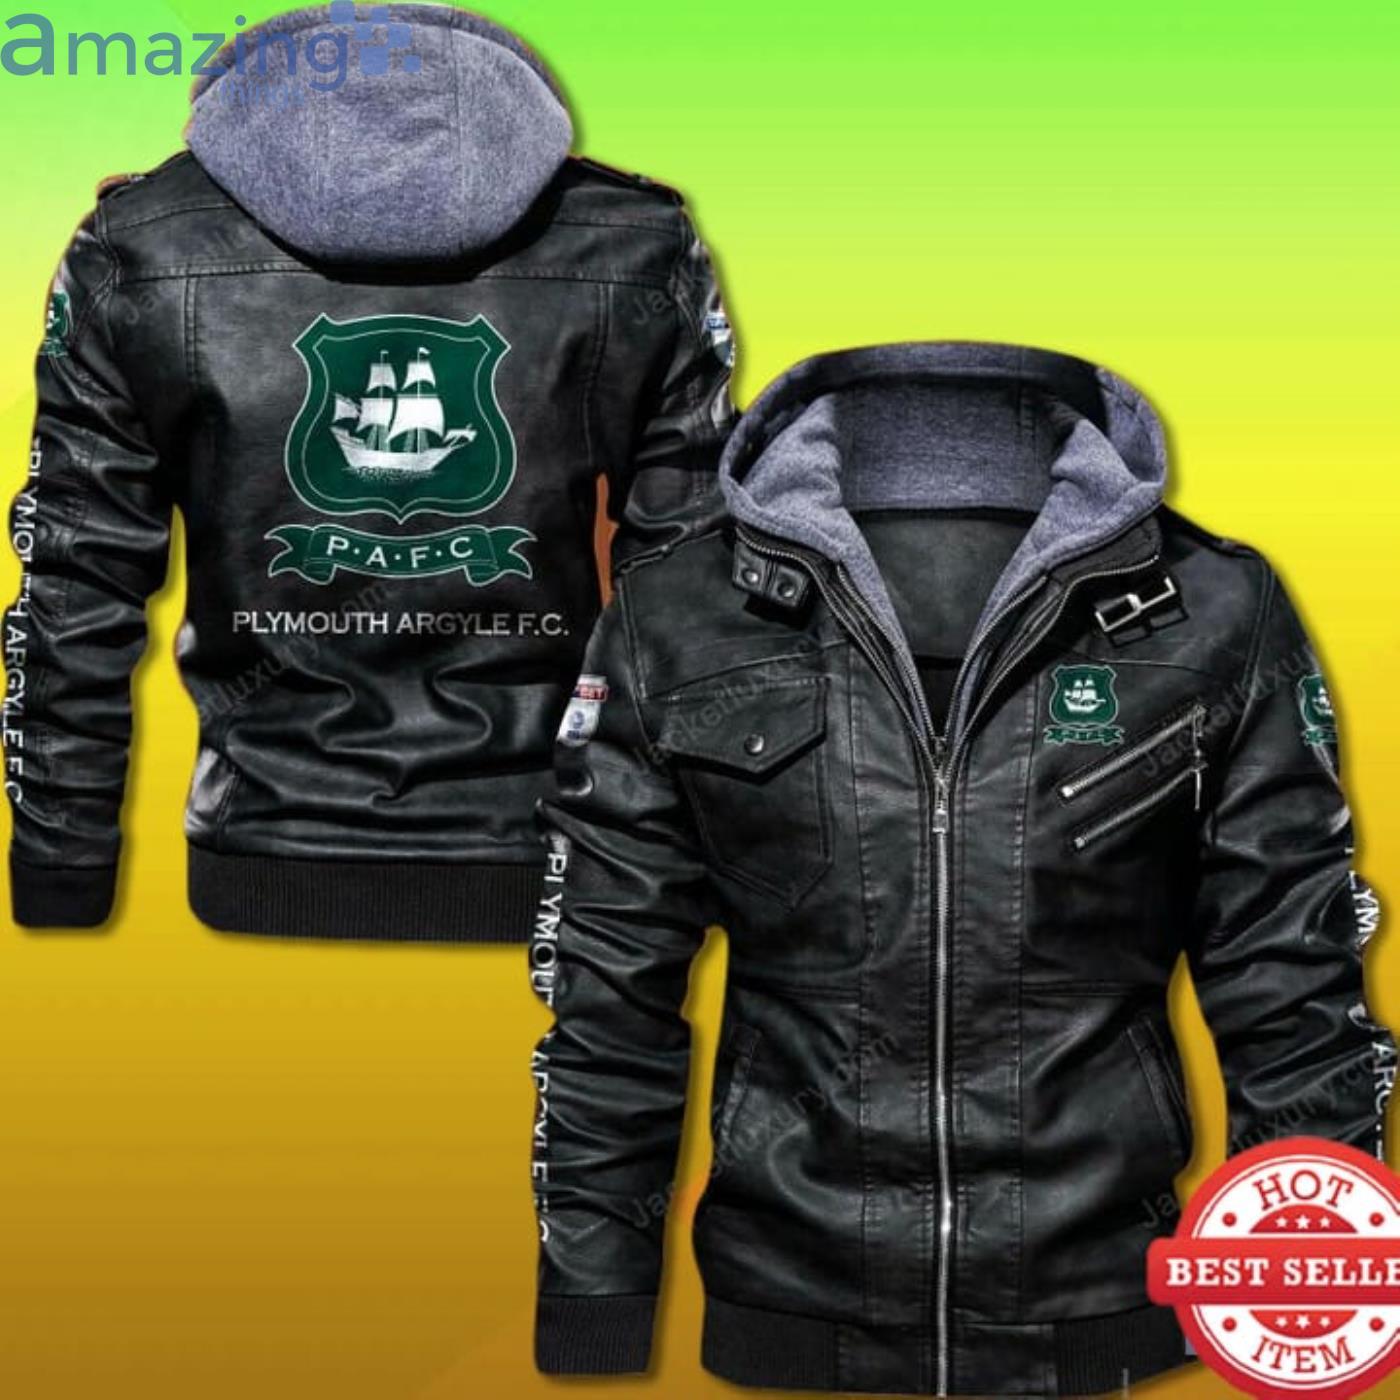 Plymouth Argyle FC Leather Jacket Product Photo 1